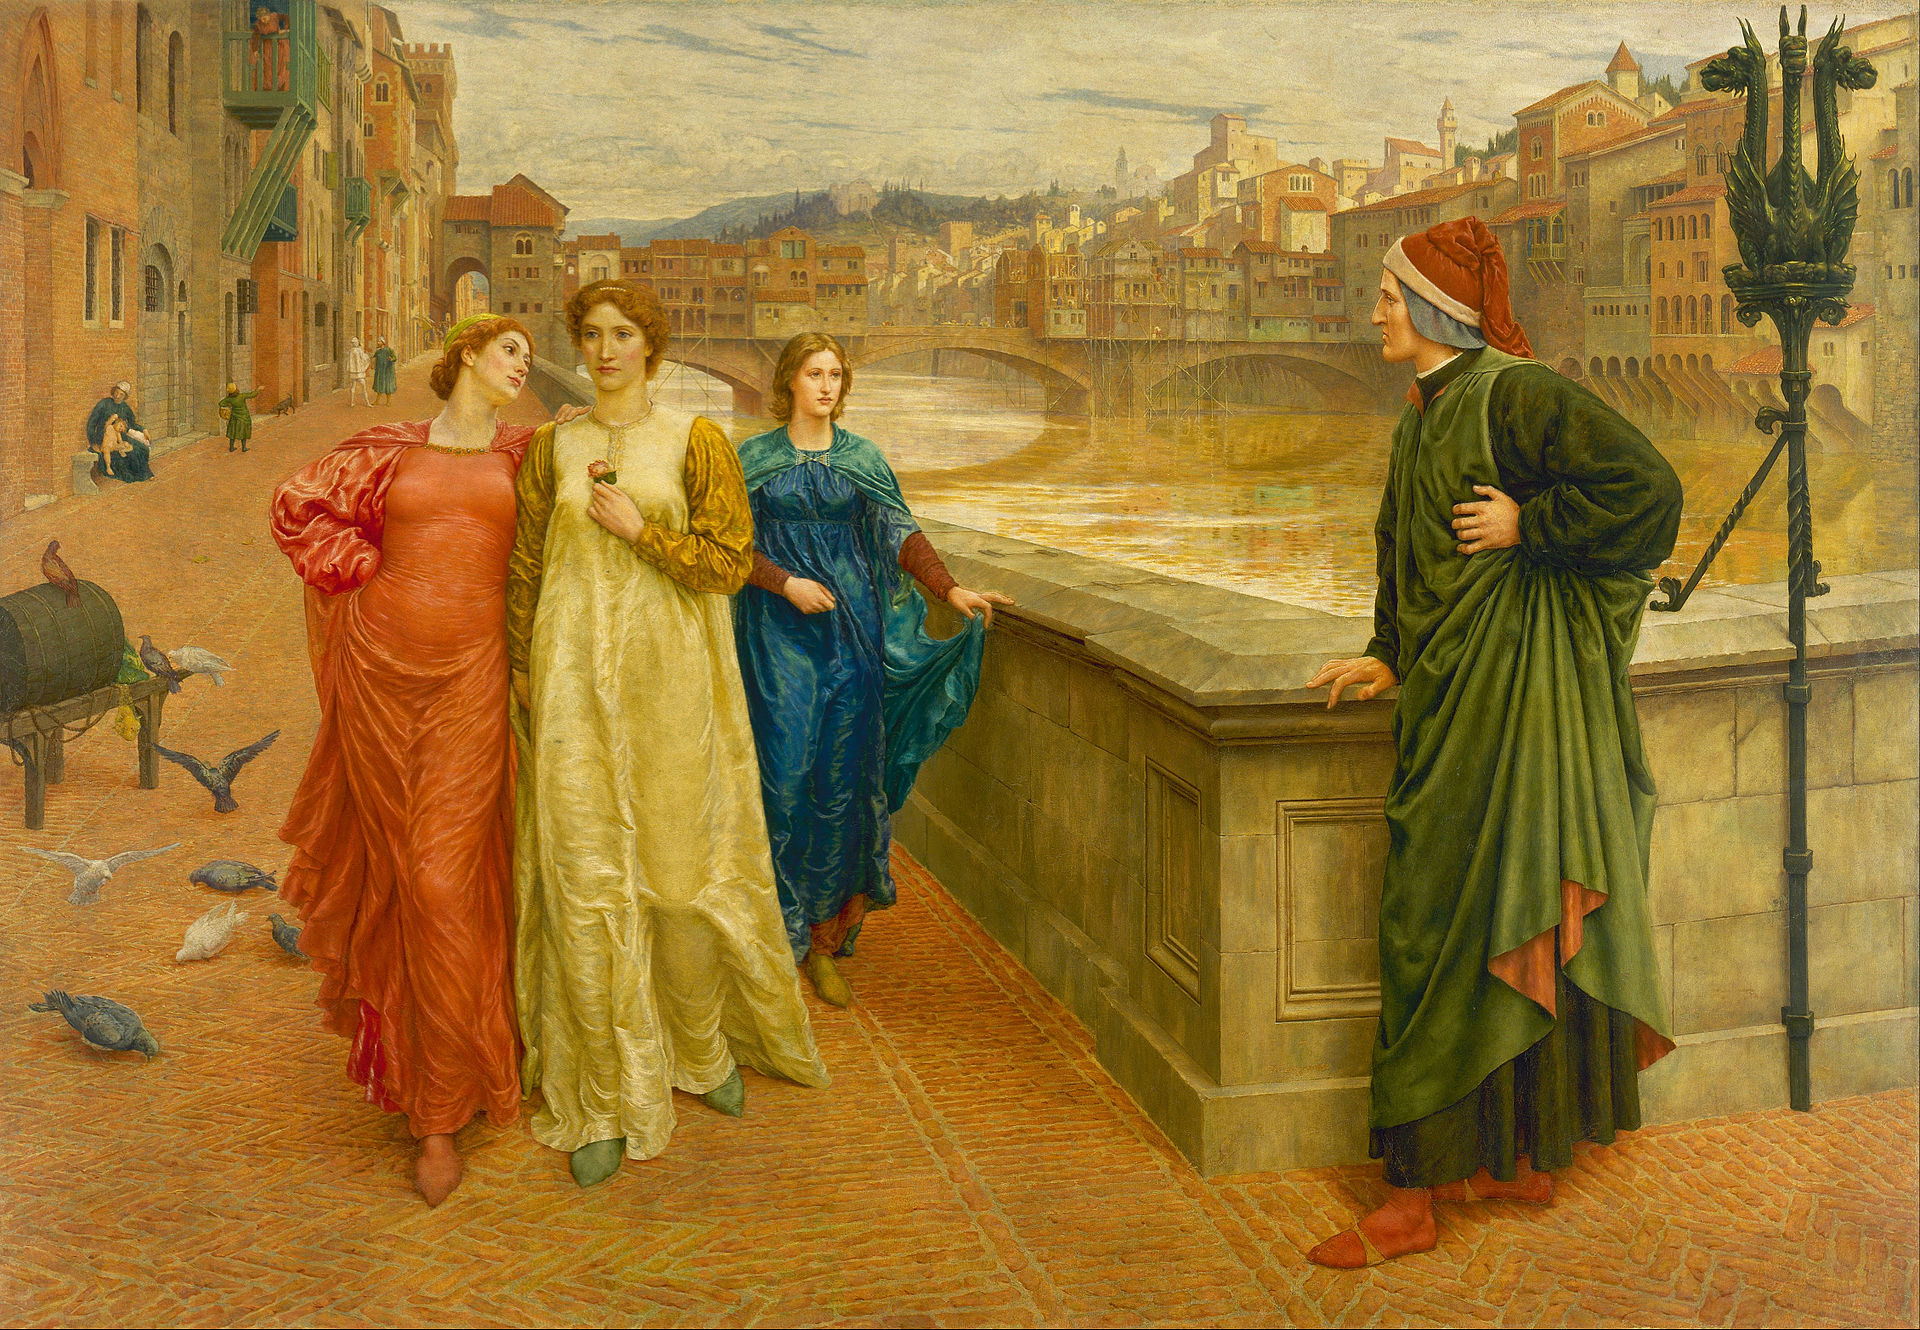 단테와 베아트리체(Dante and Beatrice) by Henry Holiday - 1882/1884년 - 142.2 x 203.2 cm 